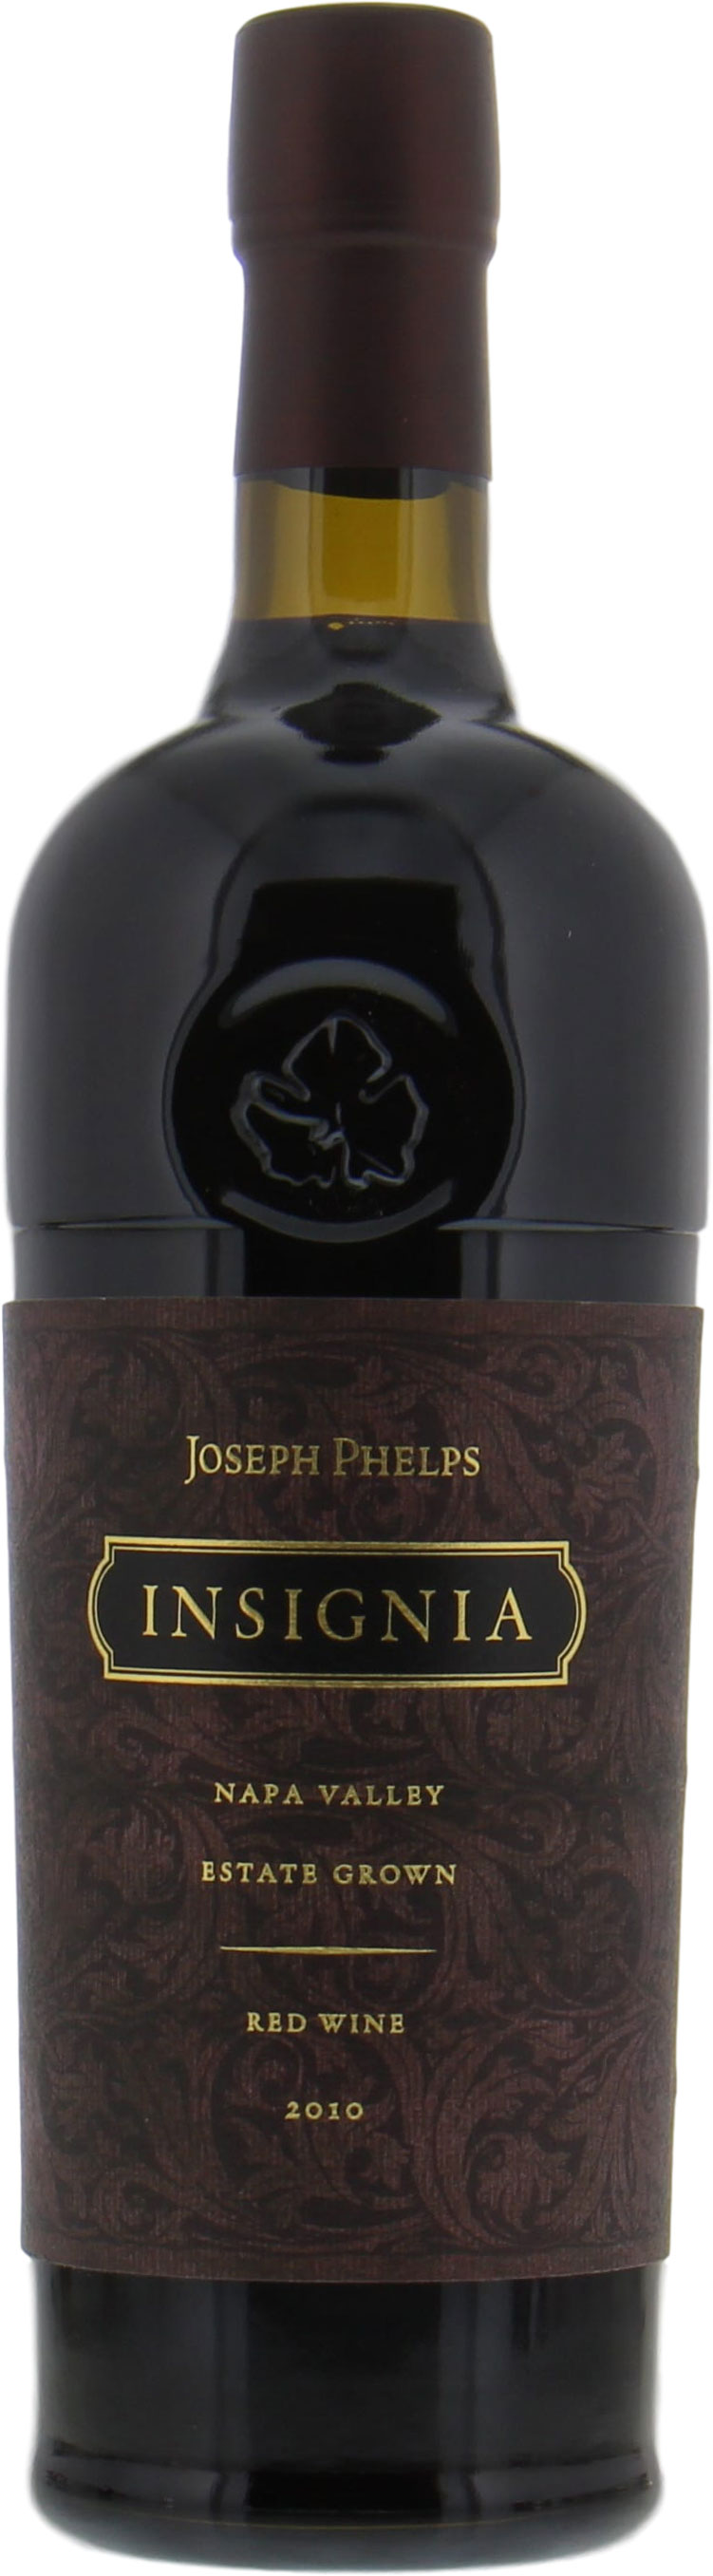 Joseph Phelps - Insignia 2010